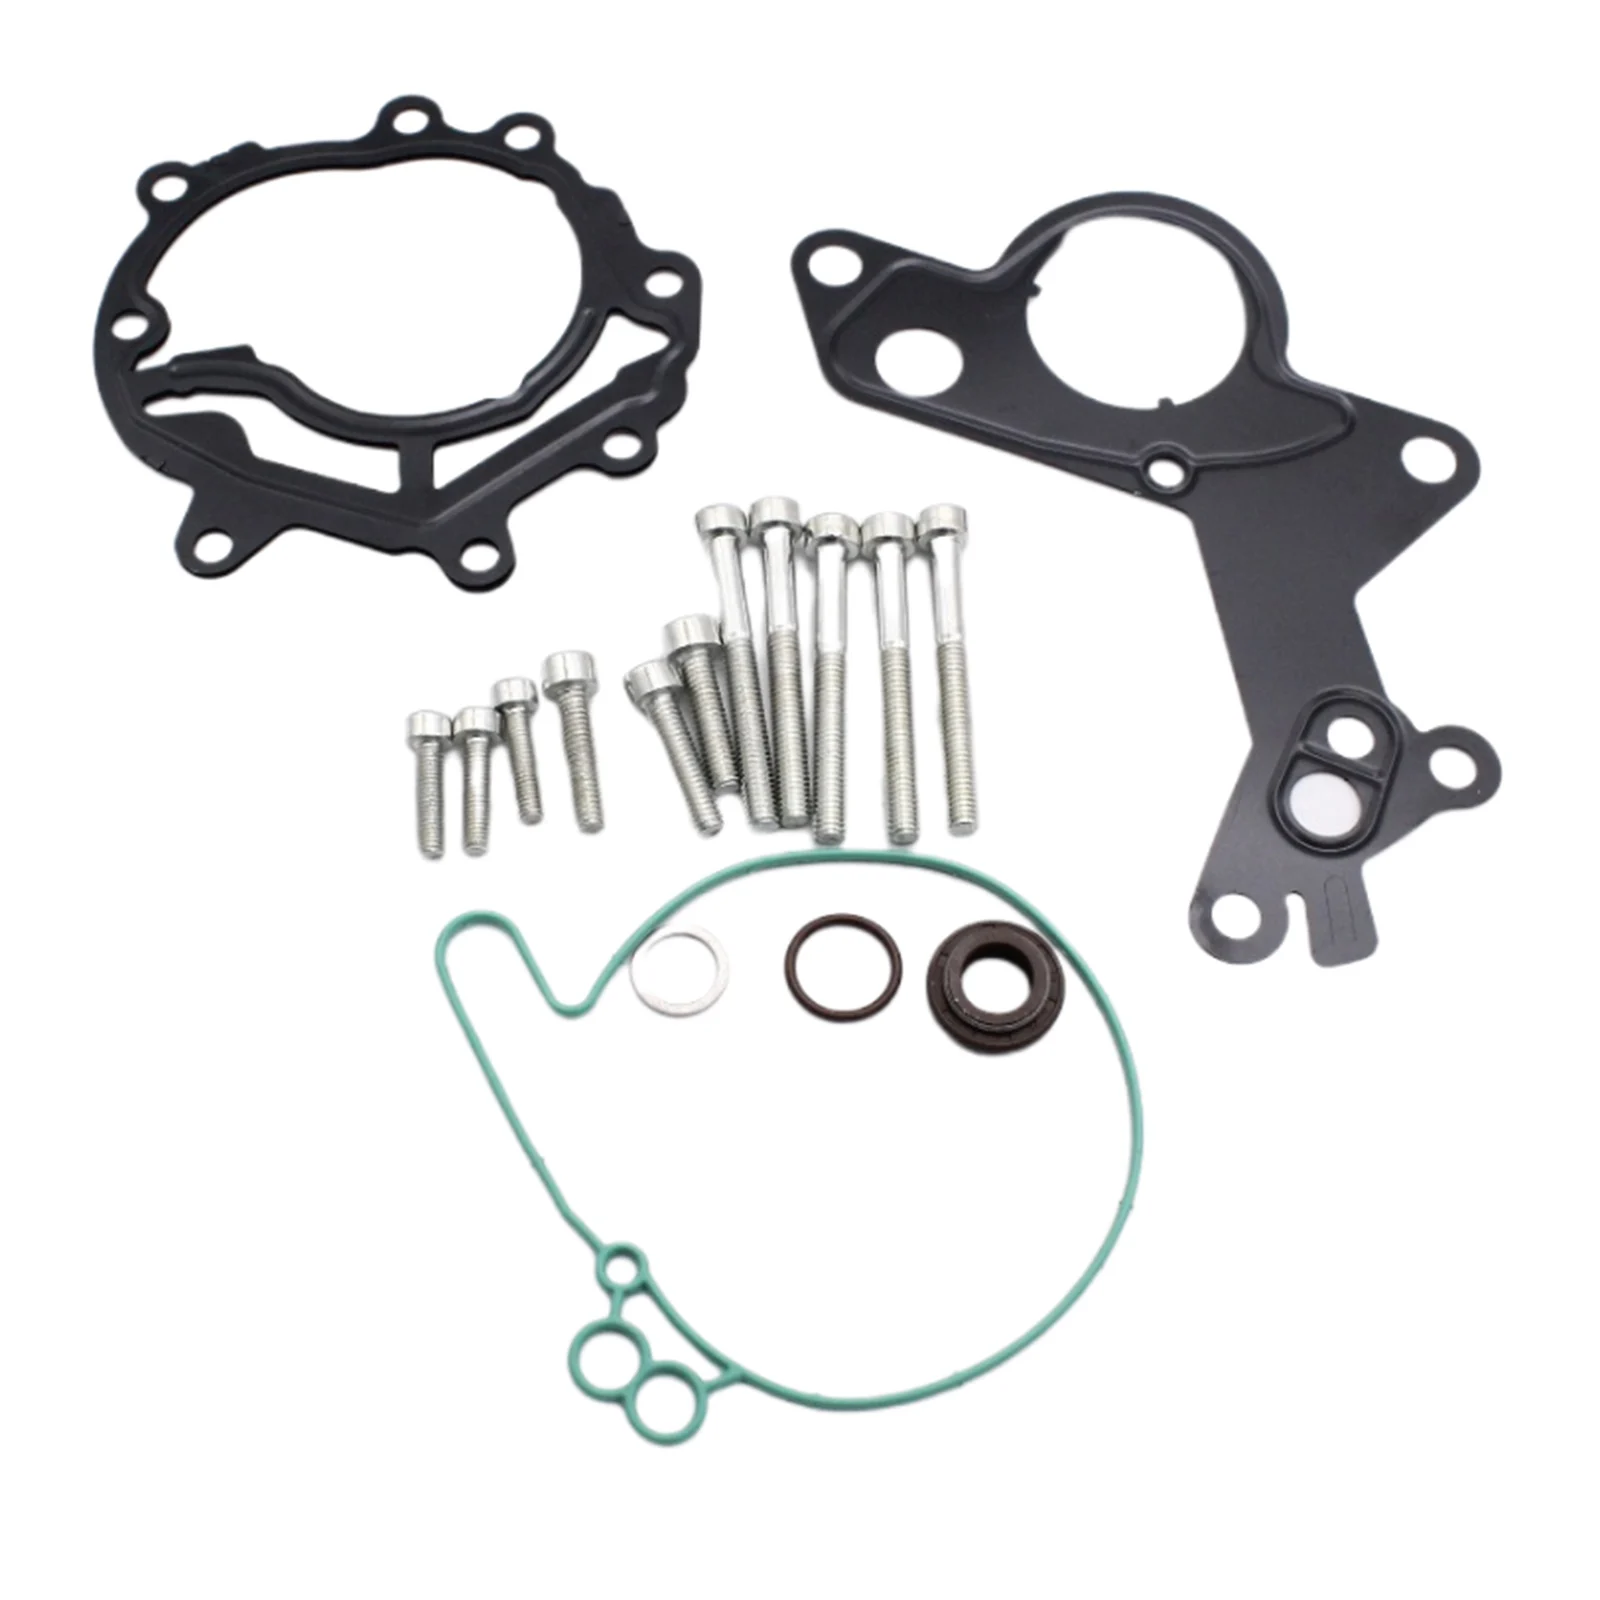 Vacuum Fuel Tandem Pump Repair Kit for VW Car Accessories 038145209 for Ford